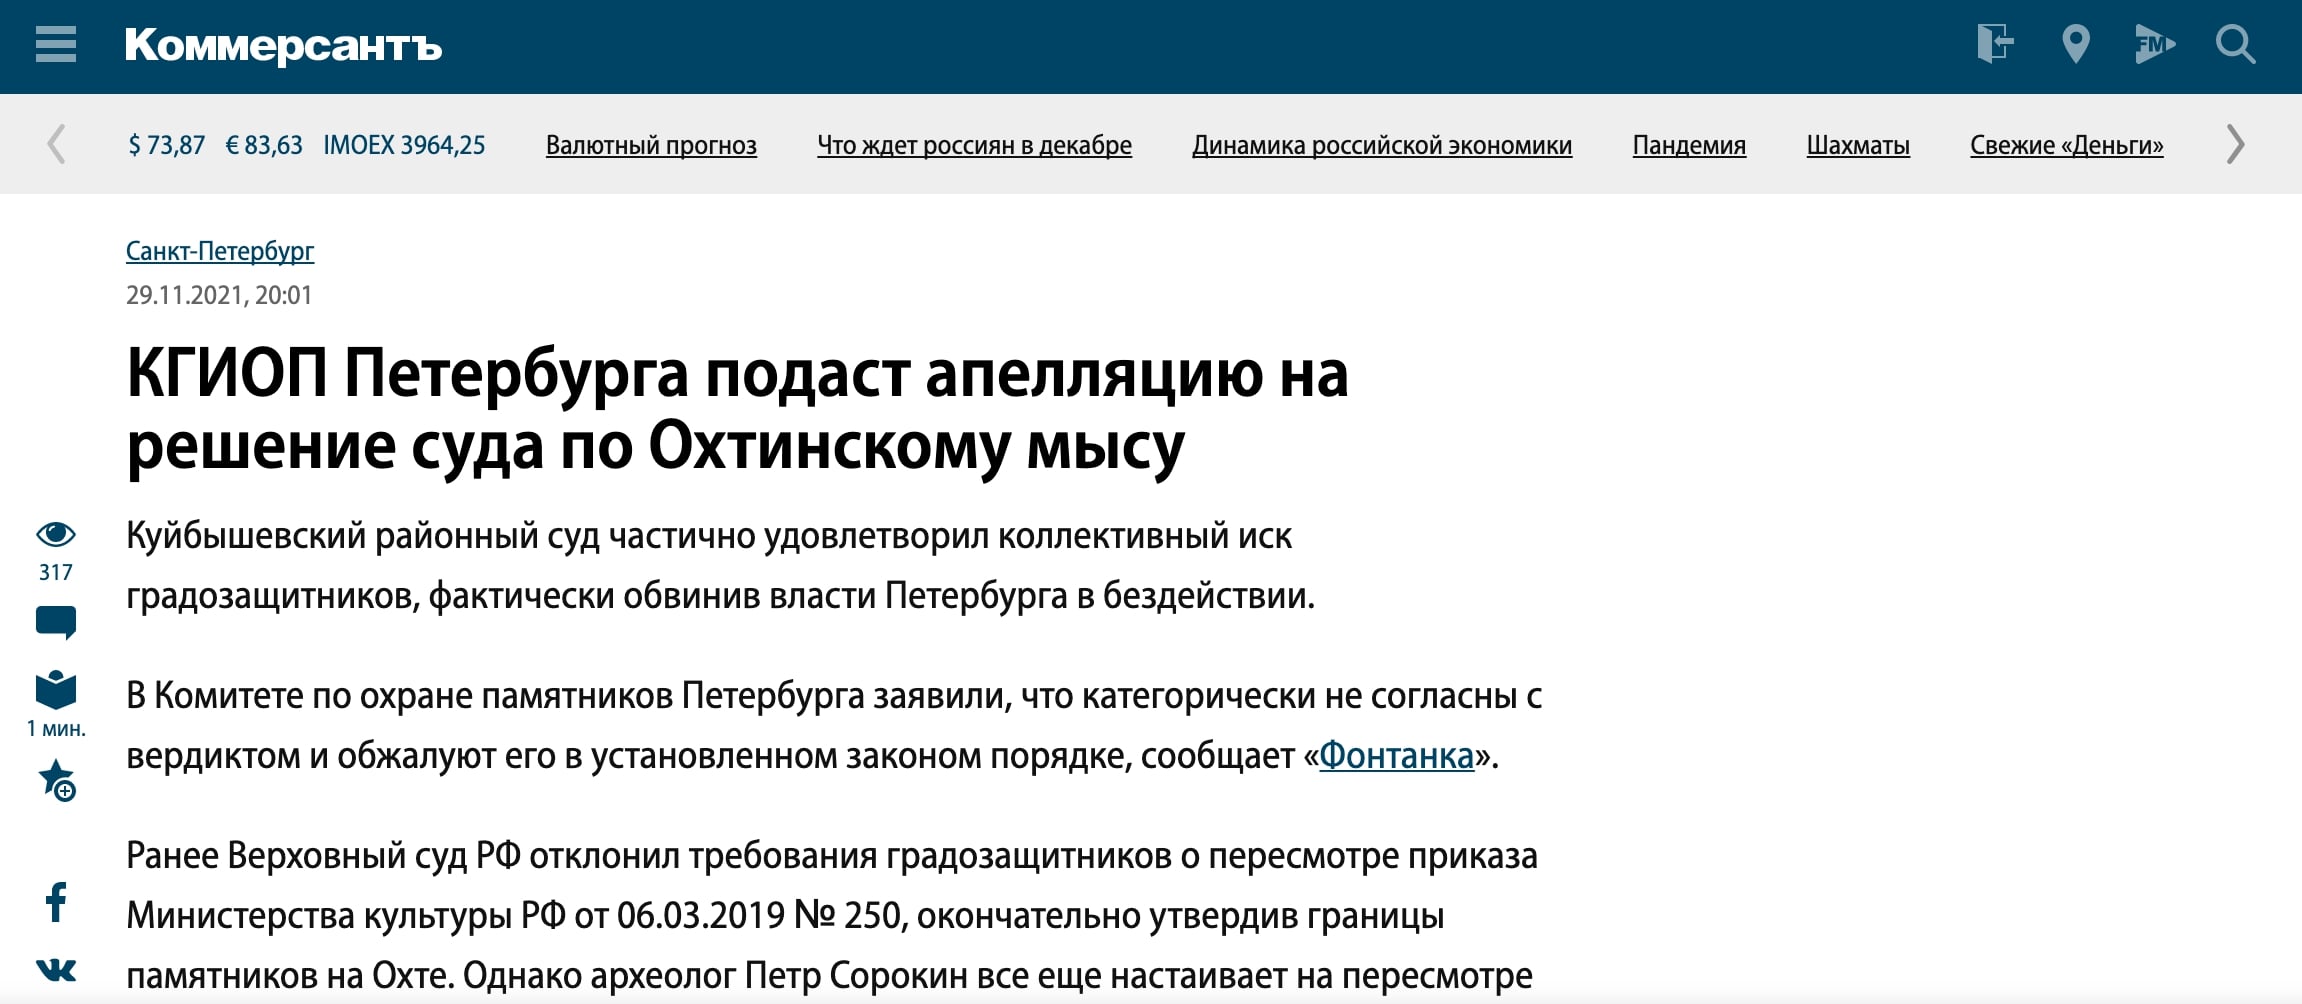 Коммерсантъ: КГИОП Петербурга подаст апелляцию на решение суда по Охтинскому мысу